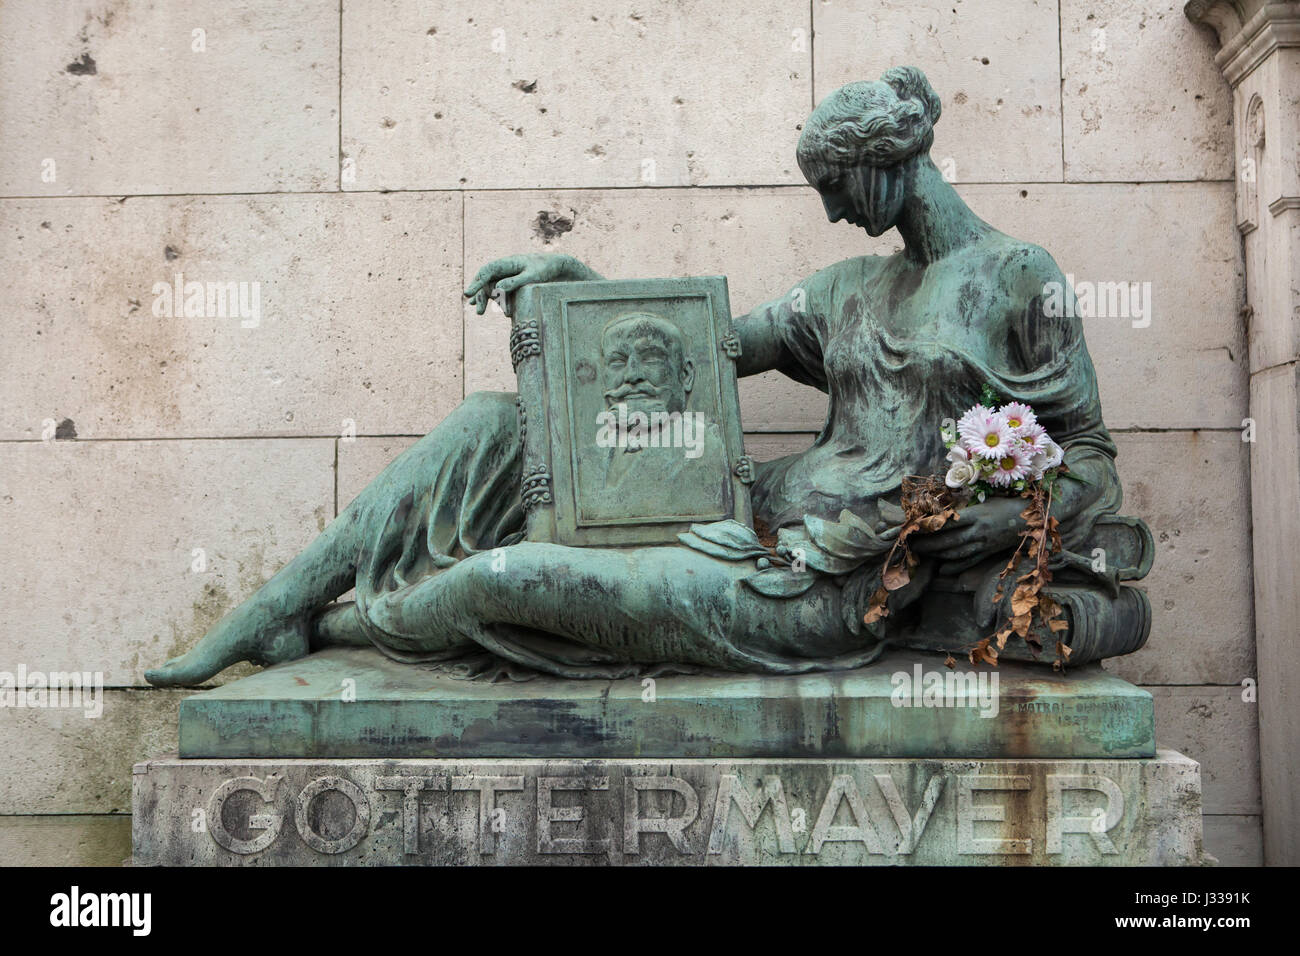 Trauer-Frau. Bronzestatue von ungarischen Bildhauern Lajos Matrai und Bela Ohmann (1929) auf das Grabdenkmal der Familie Gottermayer auf dem Kerepesi Friedhof in Budapest, Ungarn. Stockfoto